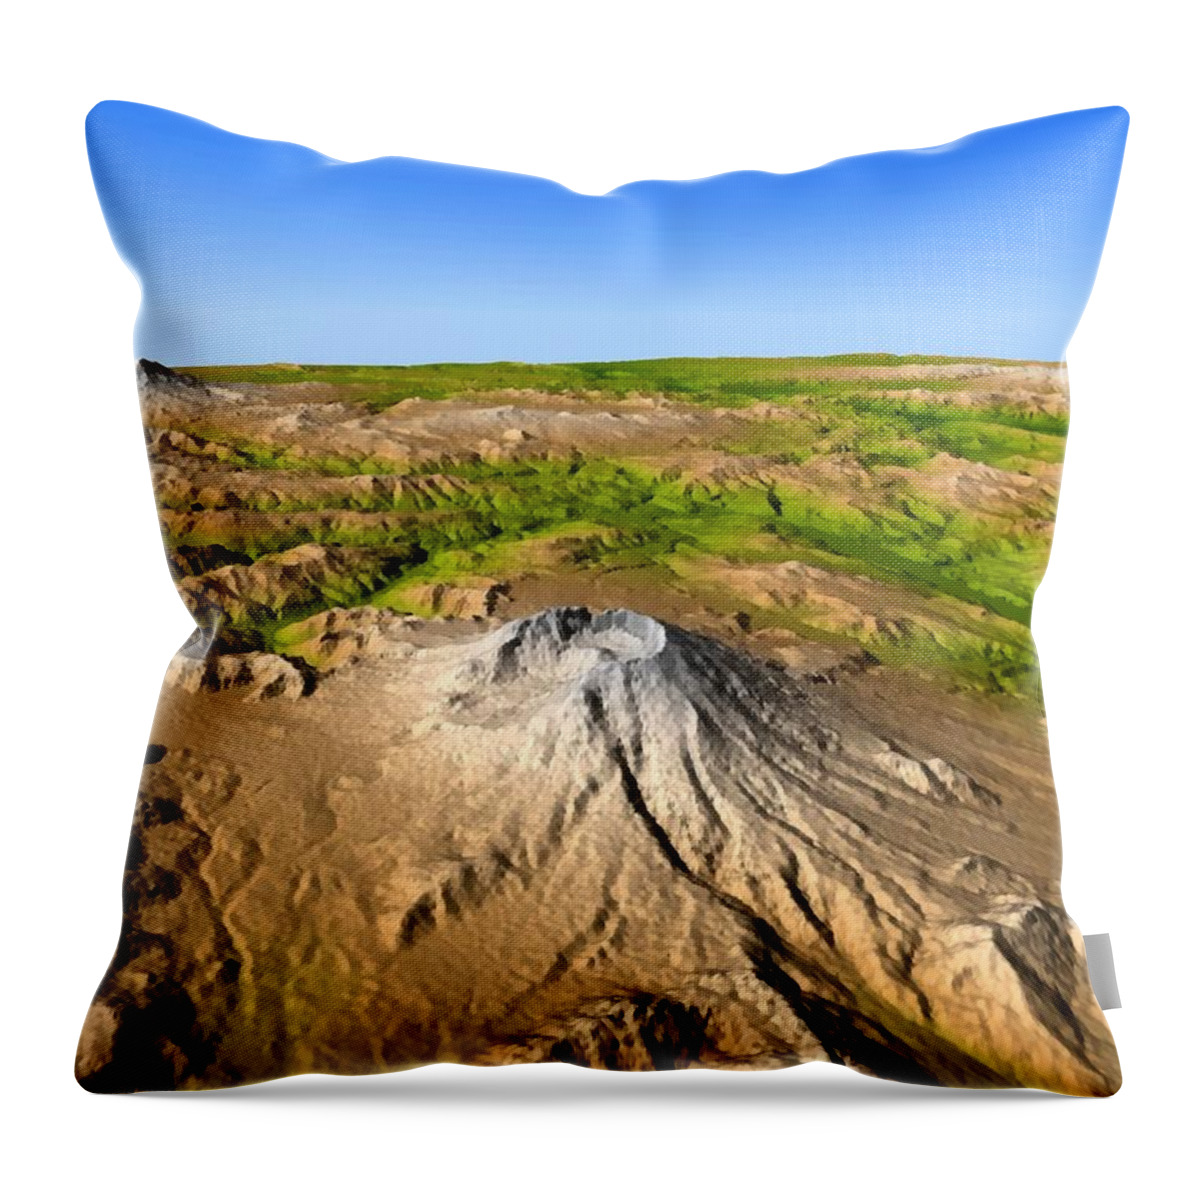 Mount Saint Helens Throw Pillow featuring the photograph Mount Saint Helens by Jpl